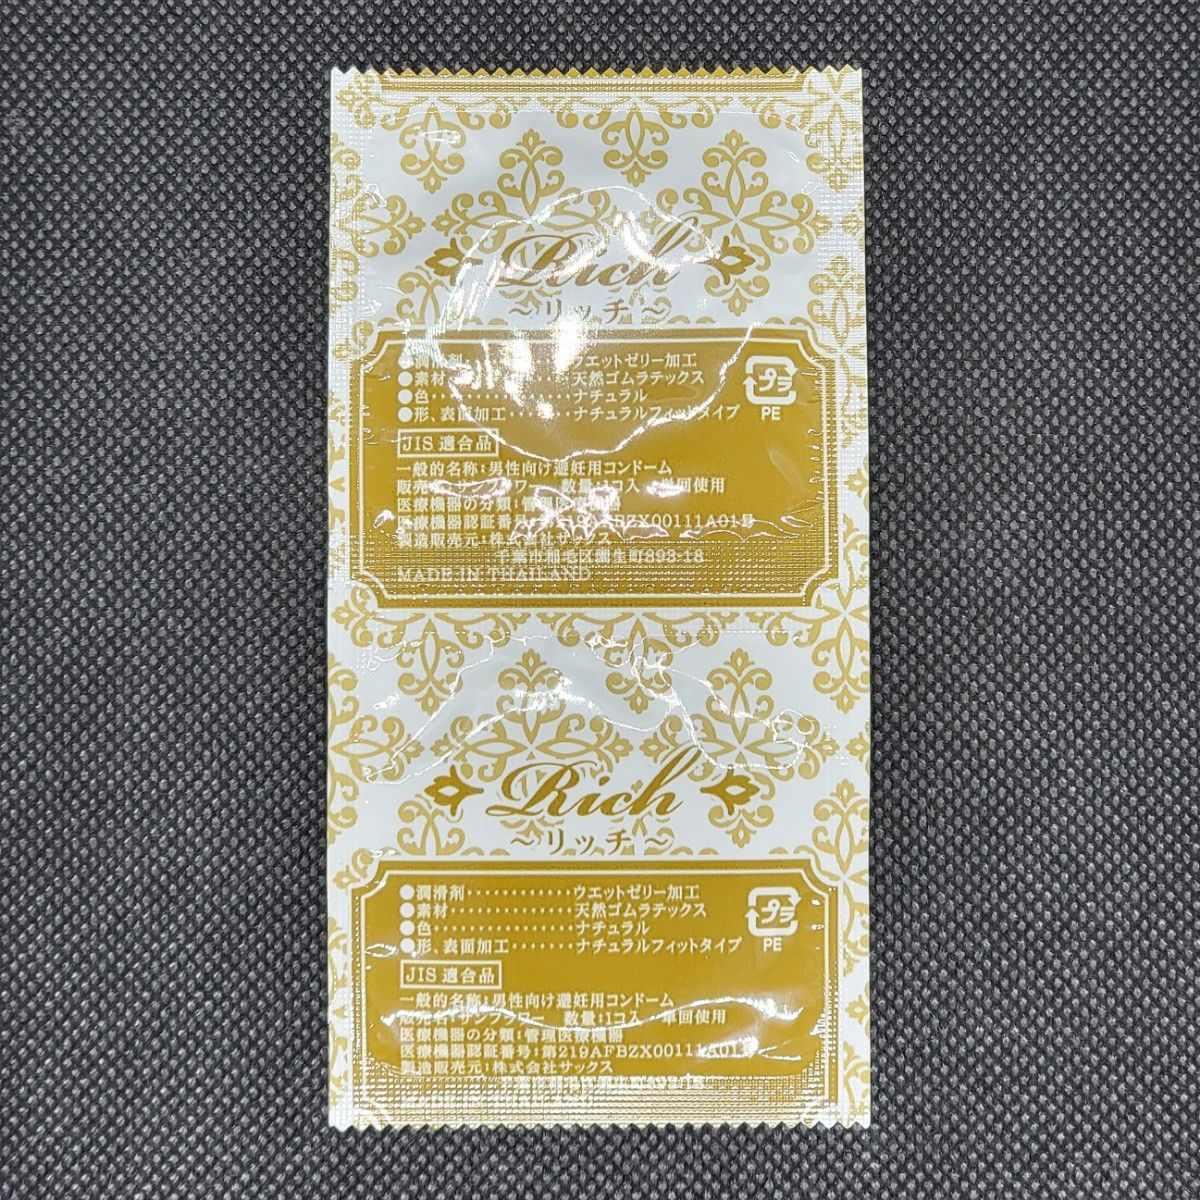  業務用コンドーム サックス Rich(リッチ) 003 Mサイズ 72個 0.03mm ジャパンメディカル スキン 避妊具